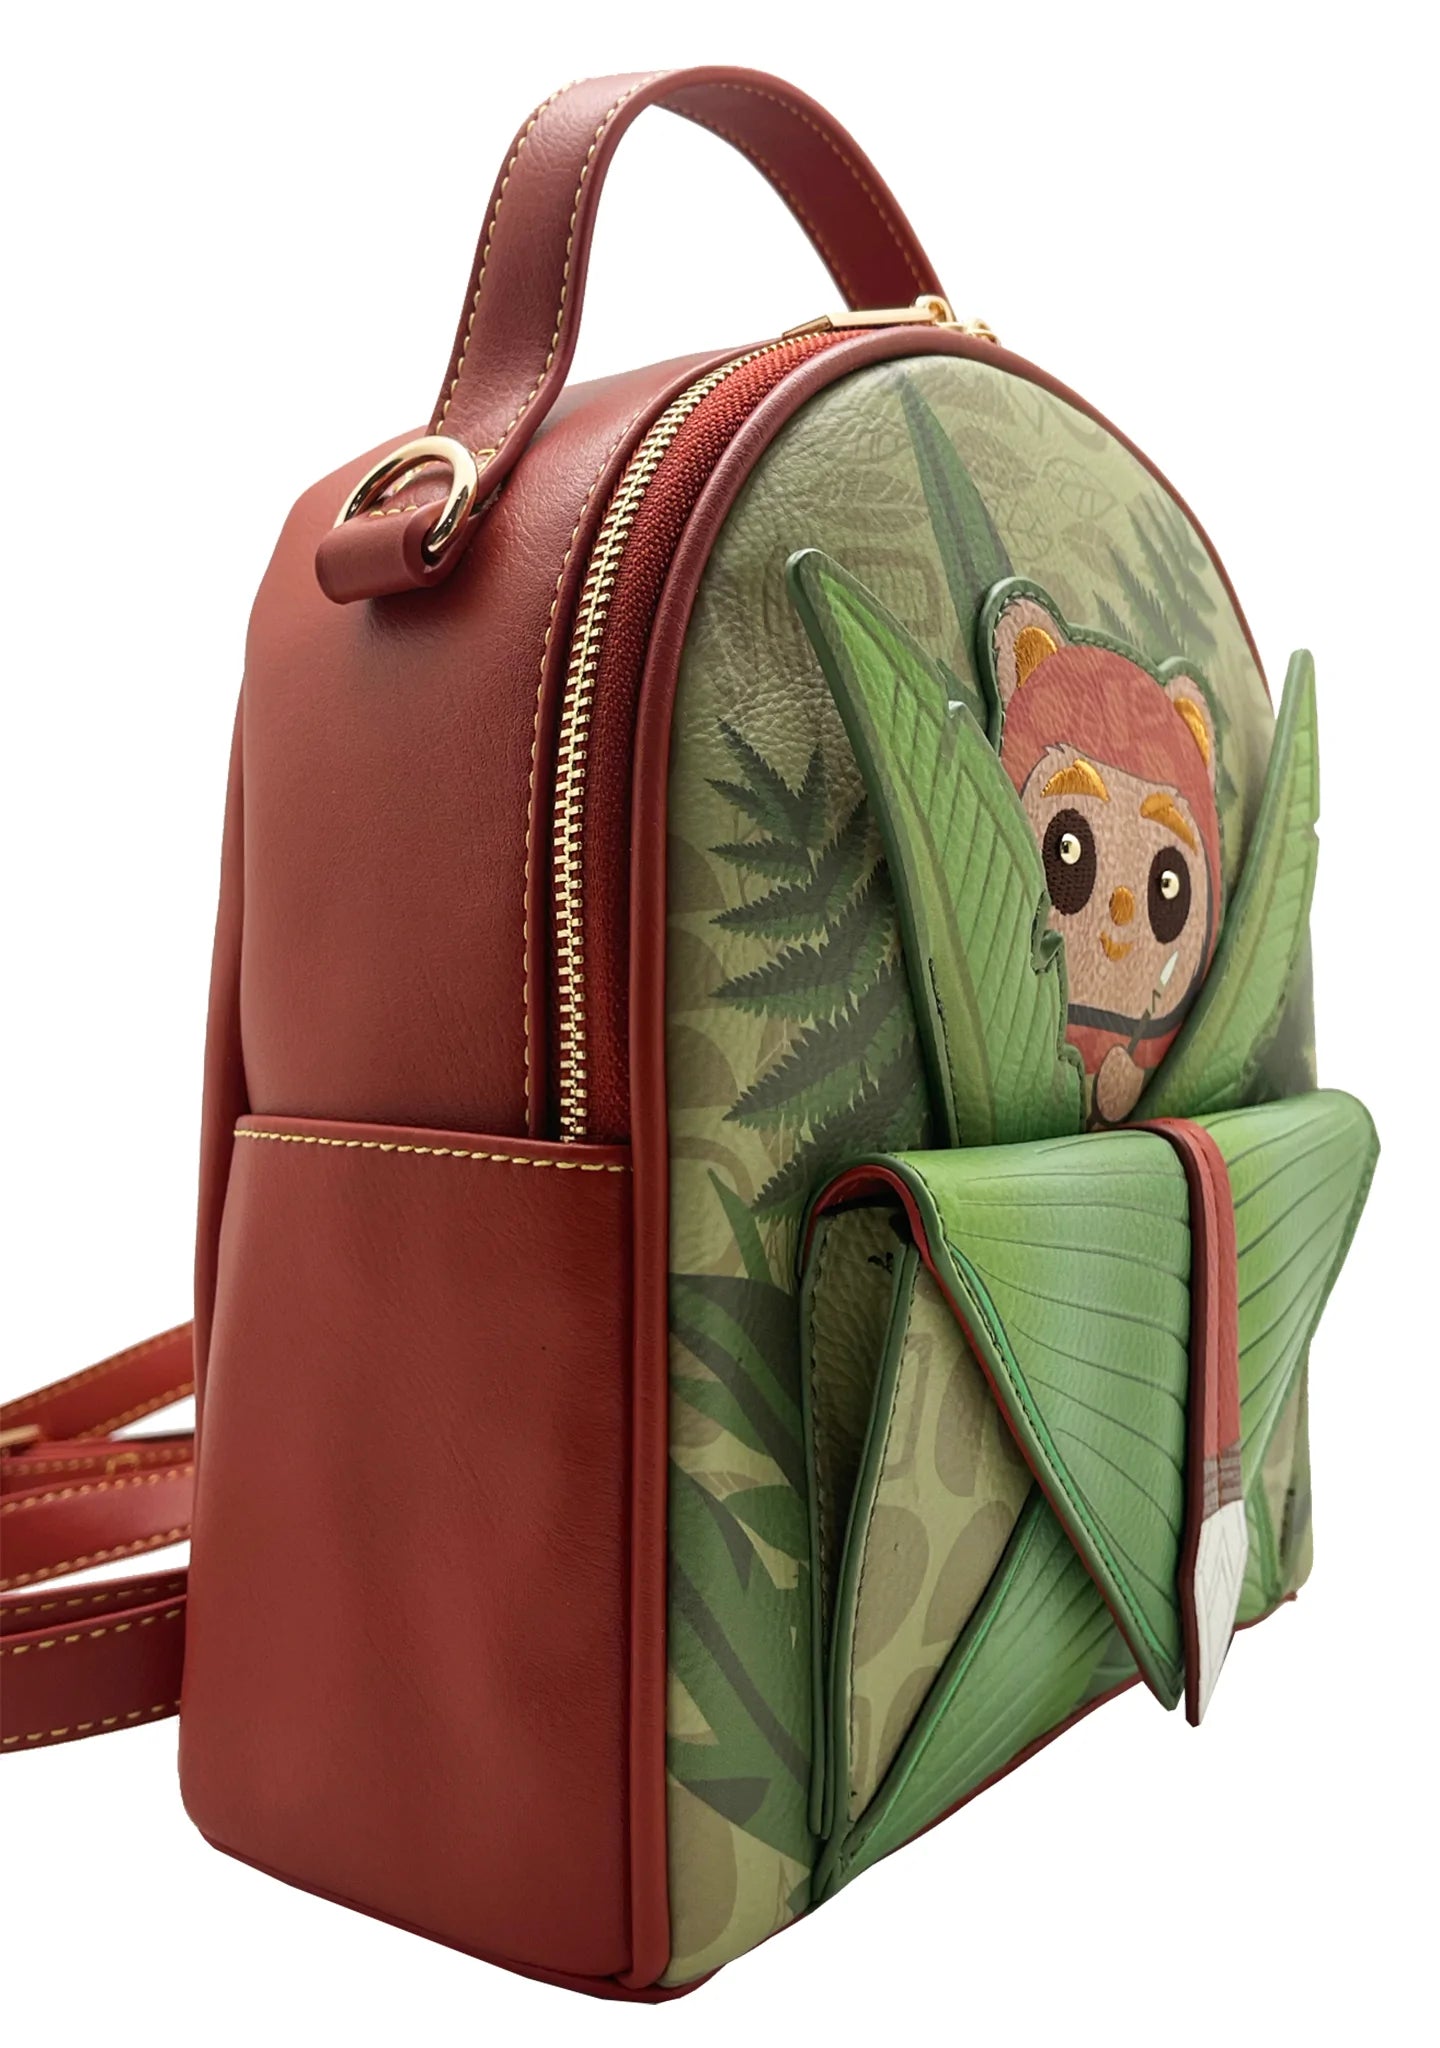 Danielle Nicole Star Wars Ewok Endor Mini Backpack